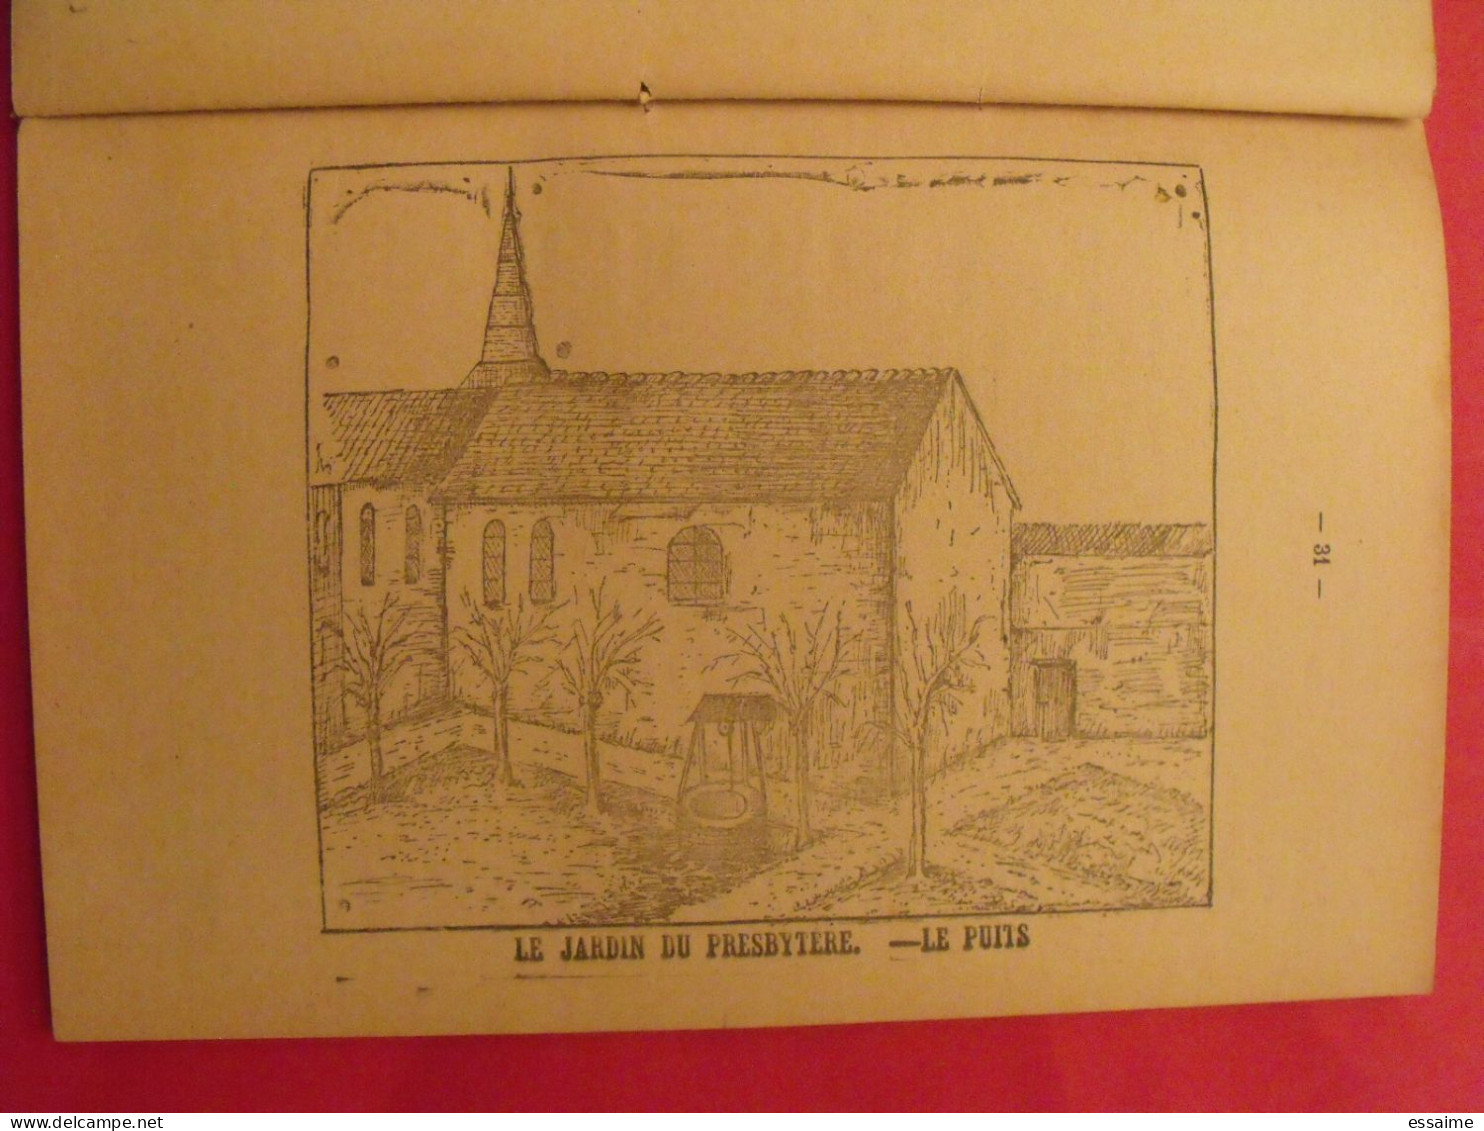 dossier sur l'Affaire abbé Bruneau Fricot Bourdais de 1894 Entrammes Laval Mayenne + photos, documents de justice